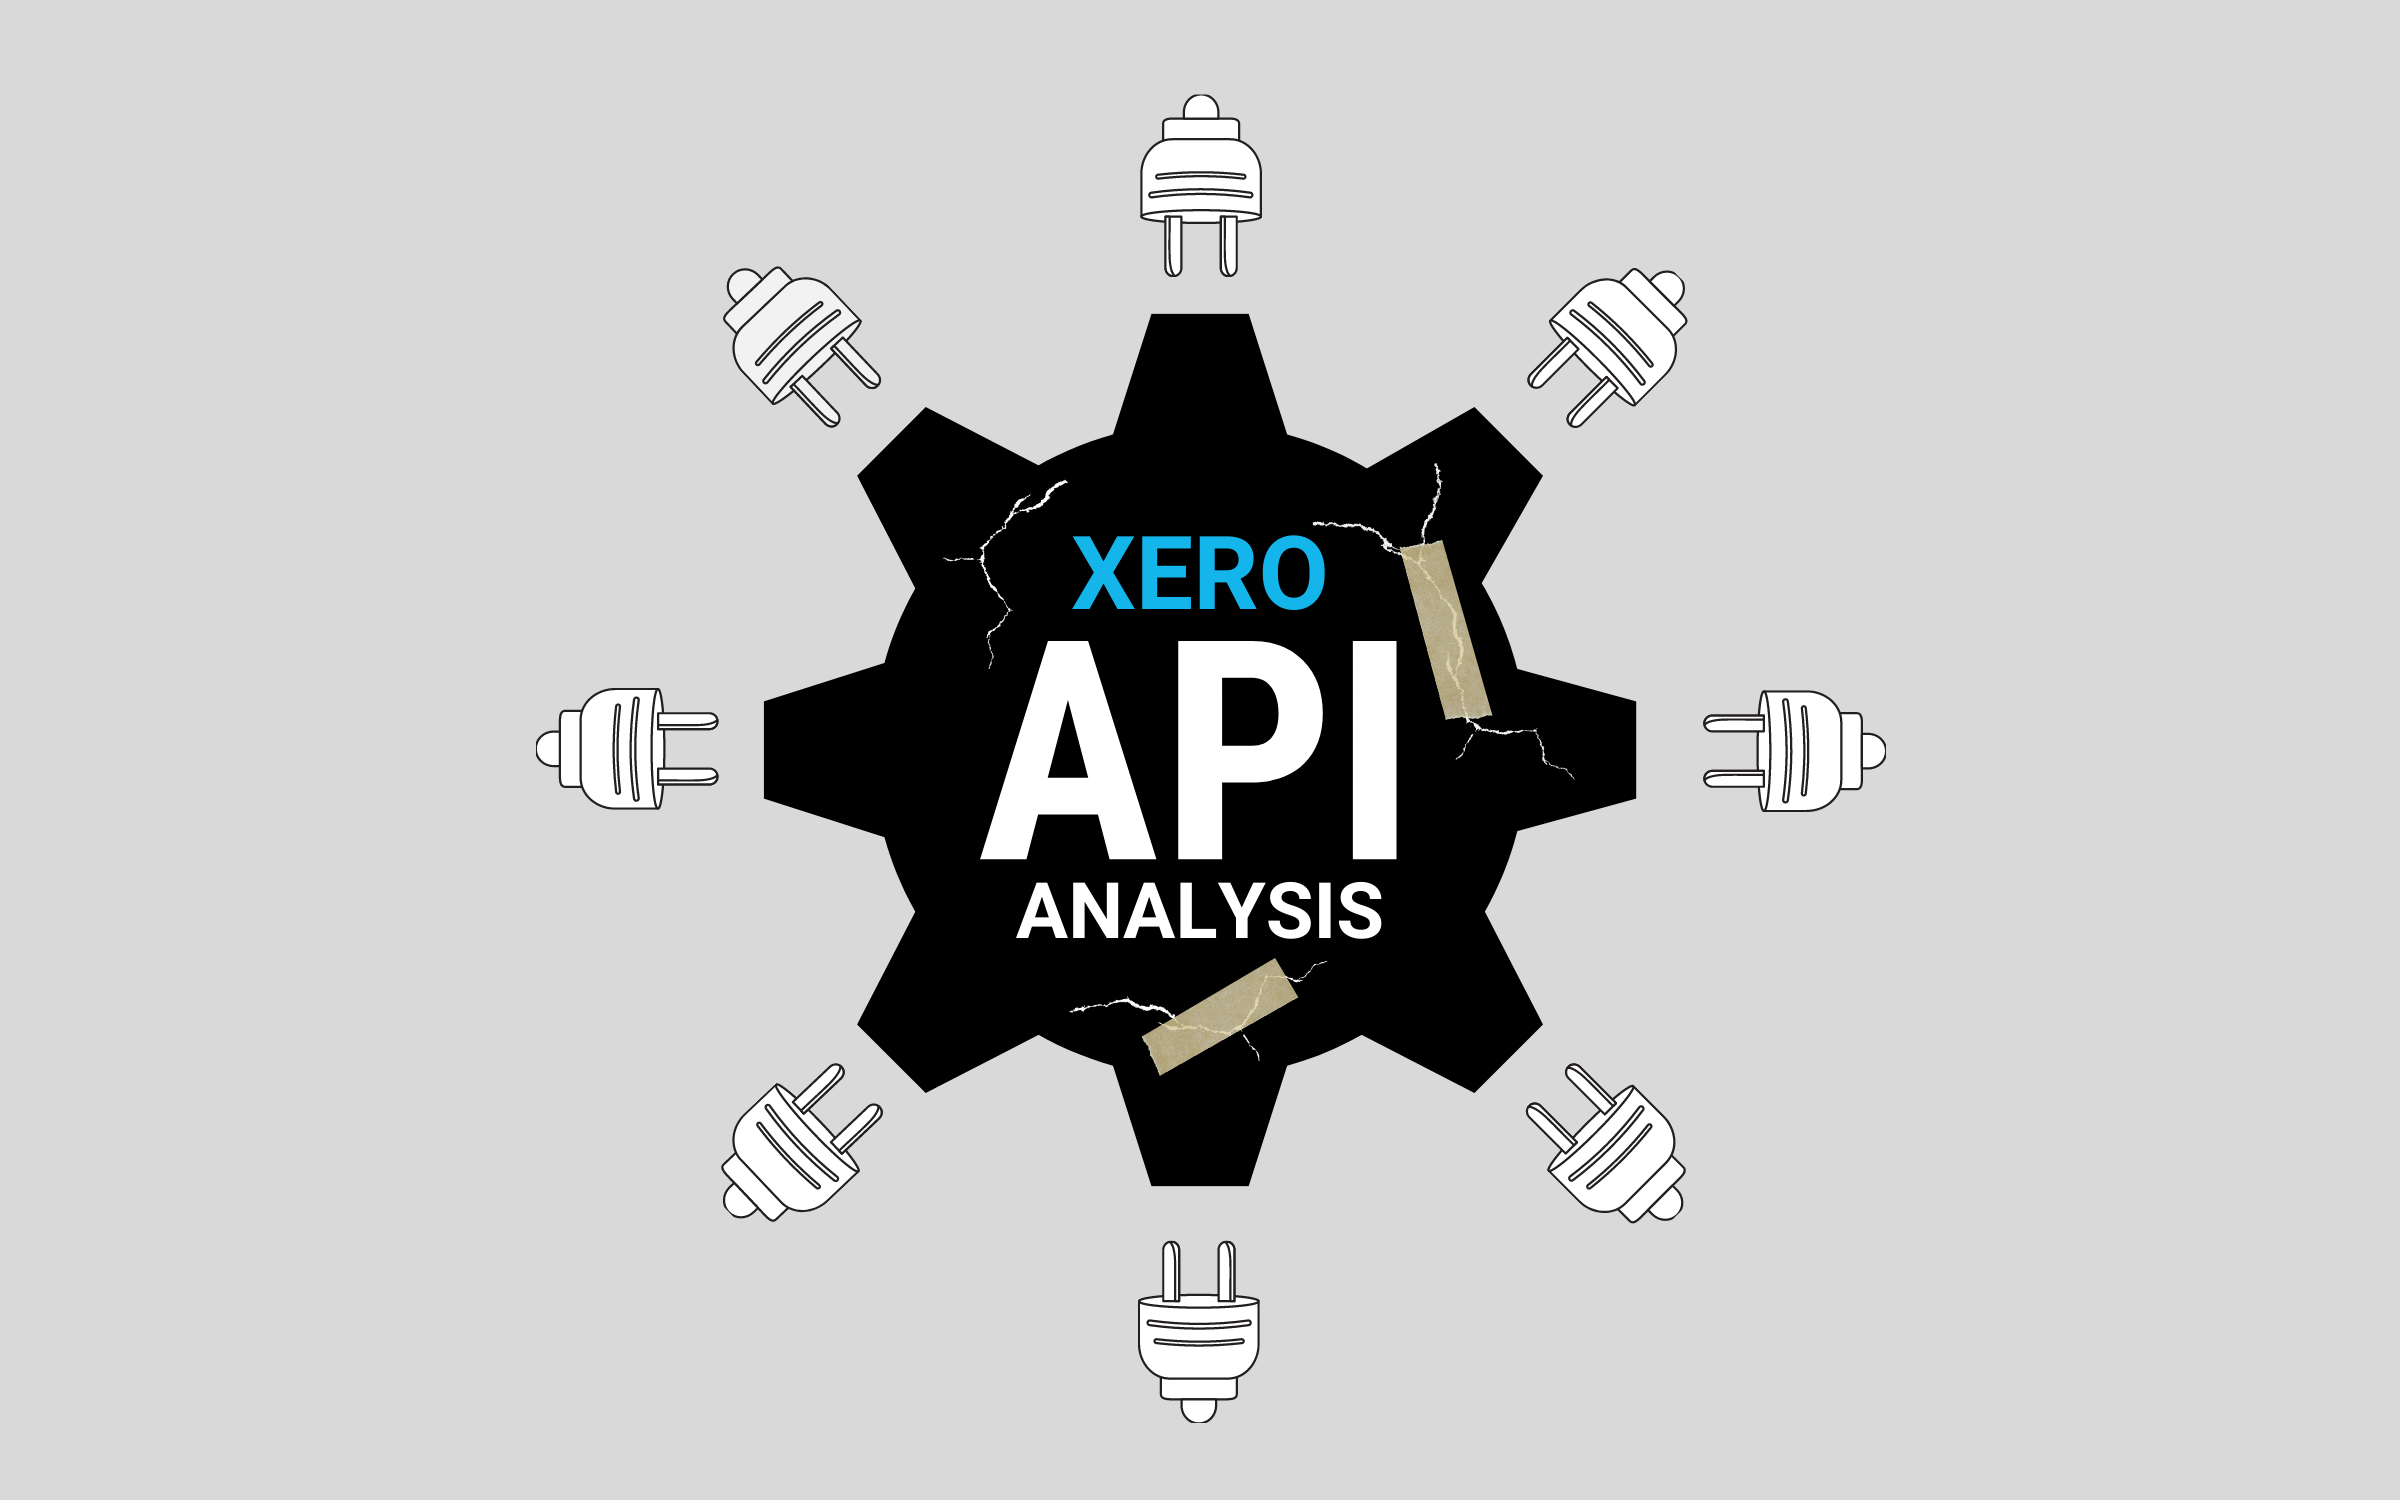 The Xero API Analysis